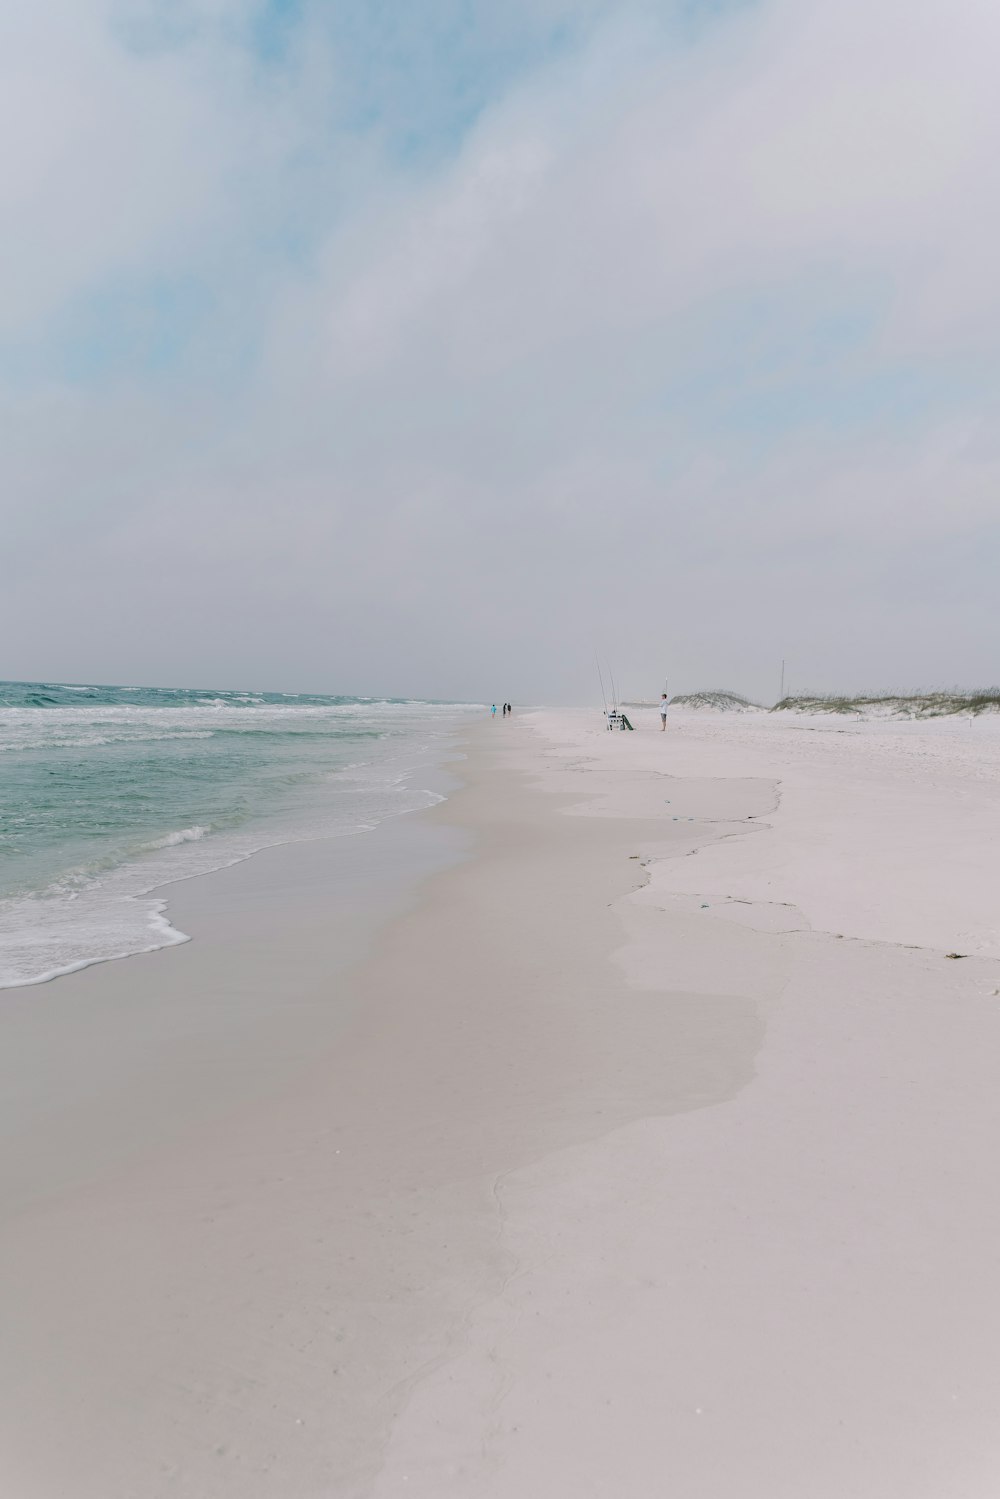 a sandy beach with a few people walking on it